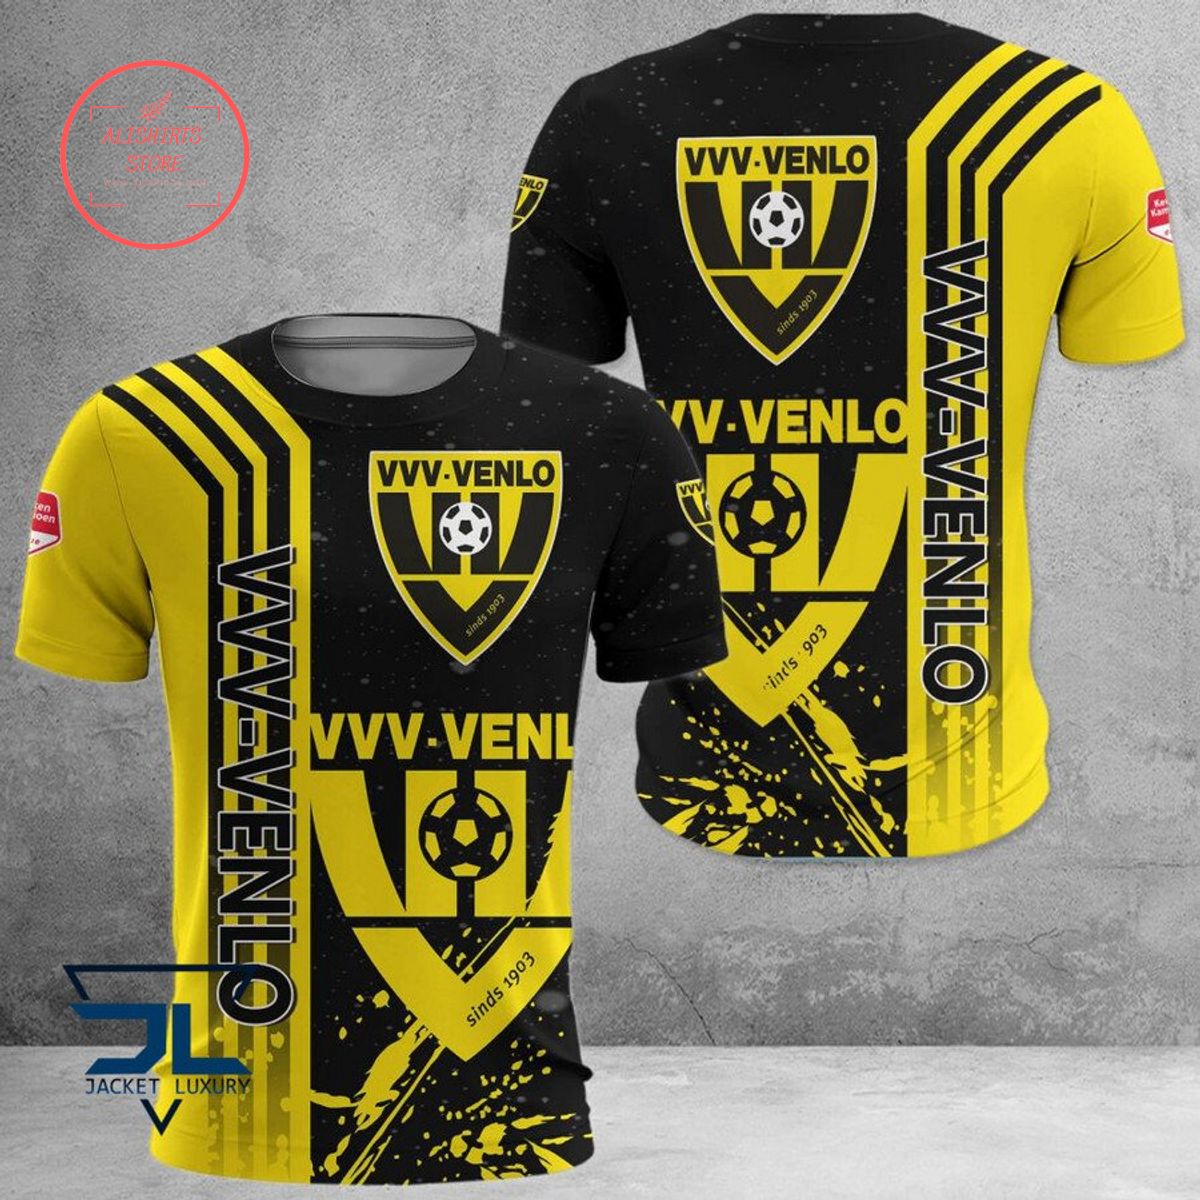 VVV-Venlo Polo Shirt